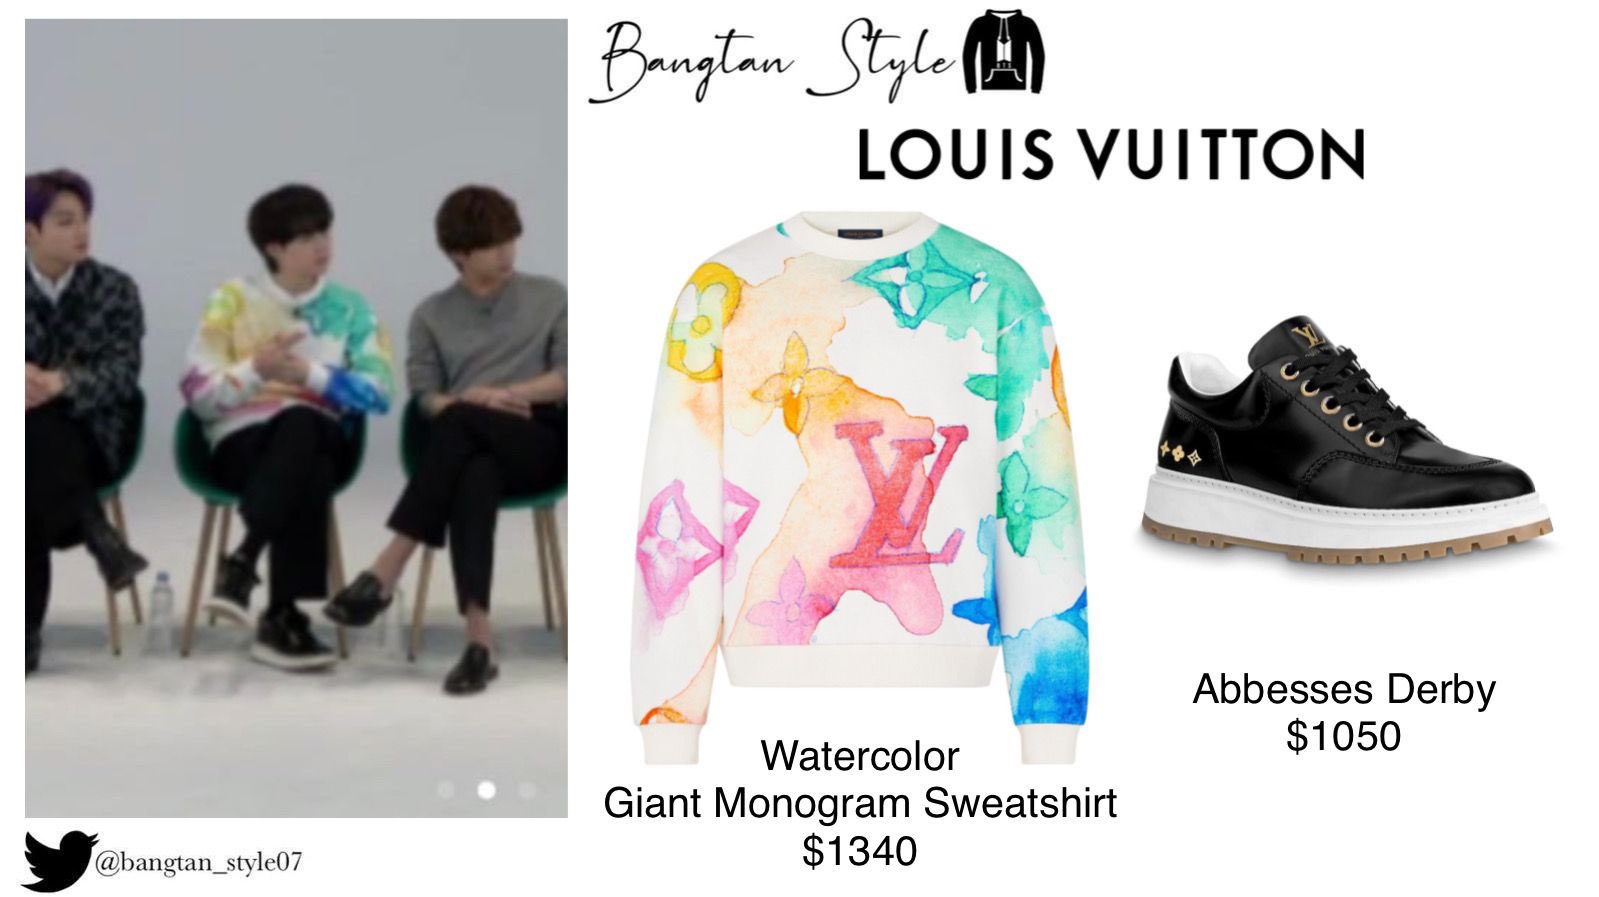 Louis Vuitton Watercolor Monogrammed Sweatshirt